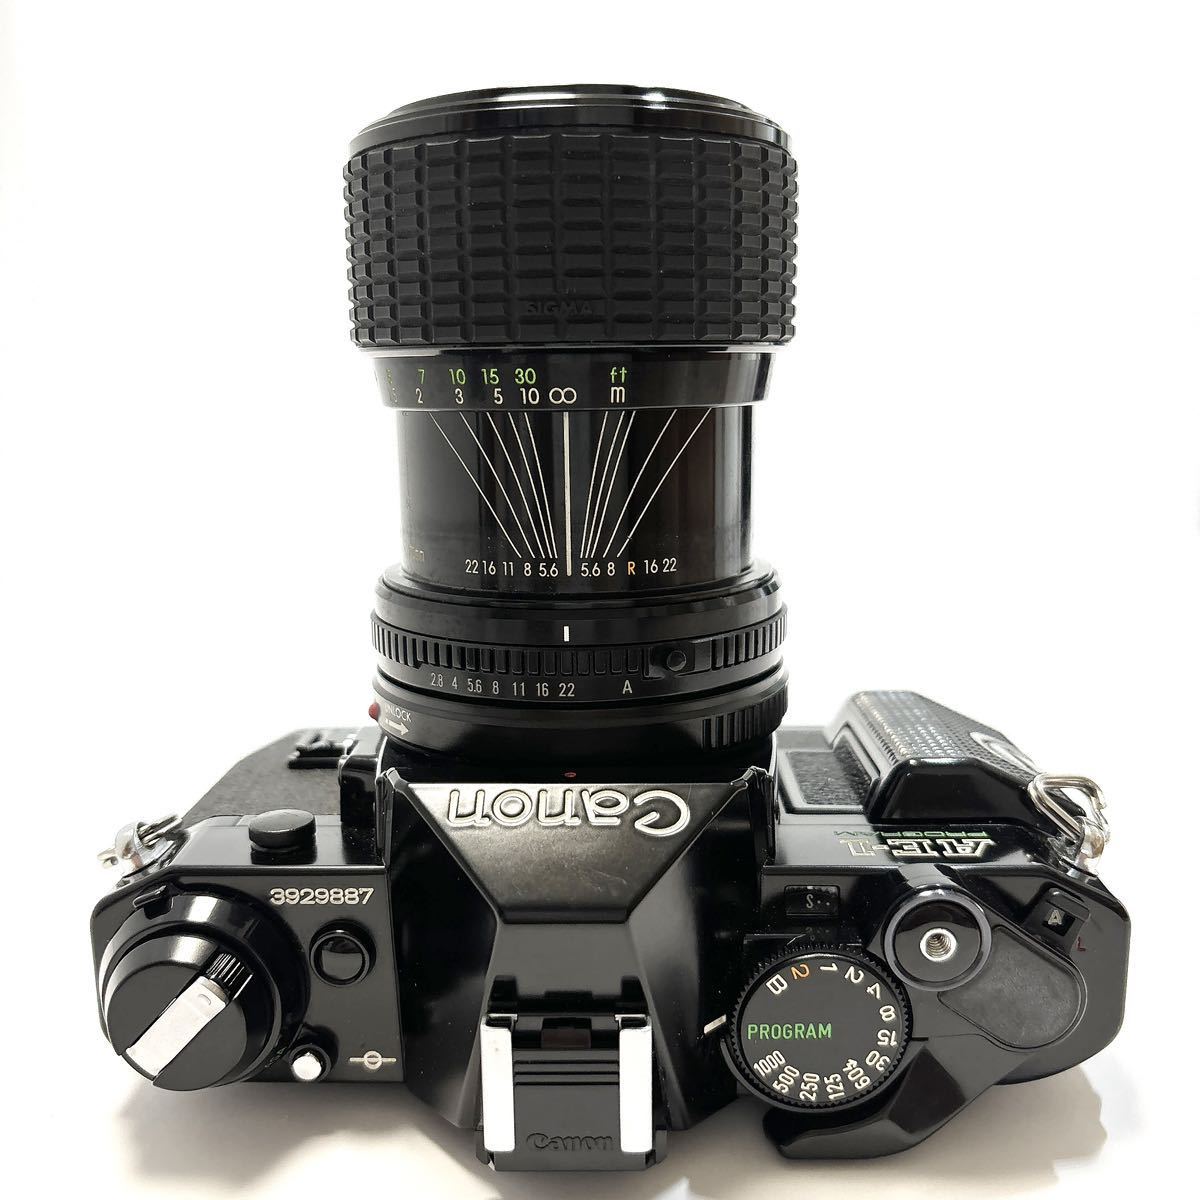 Canon キャノン AE-1 PROGRAM ブラックボディ SIGMA ZOOM-MASTER 1:2.8-4 35-70mm レンズ セット 一眼レフカメラ alp川0207_画像4